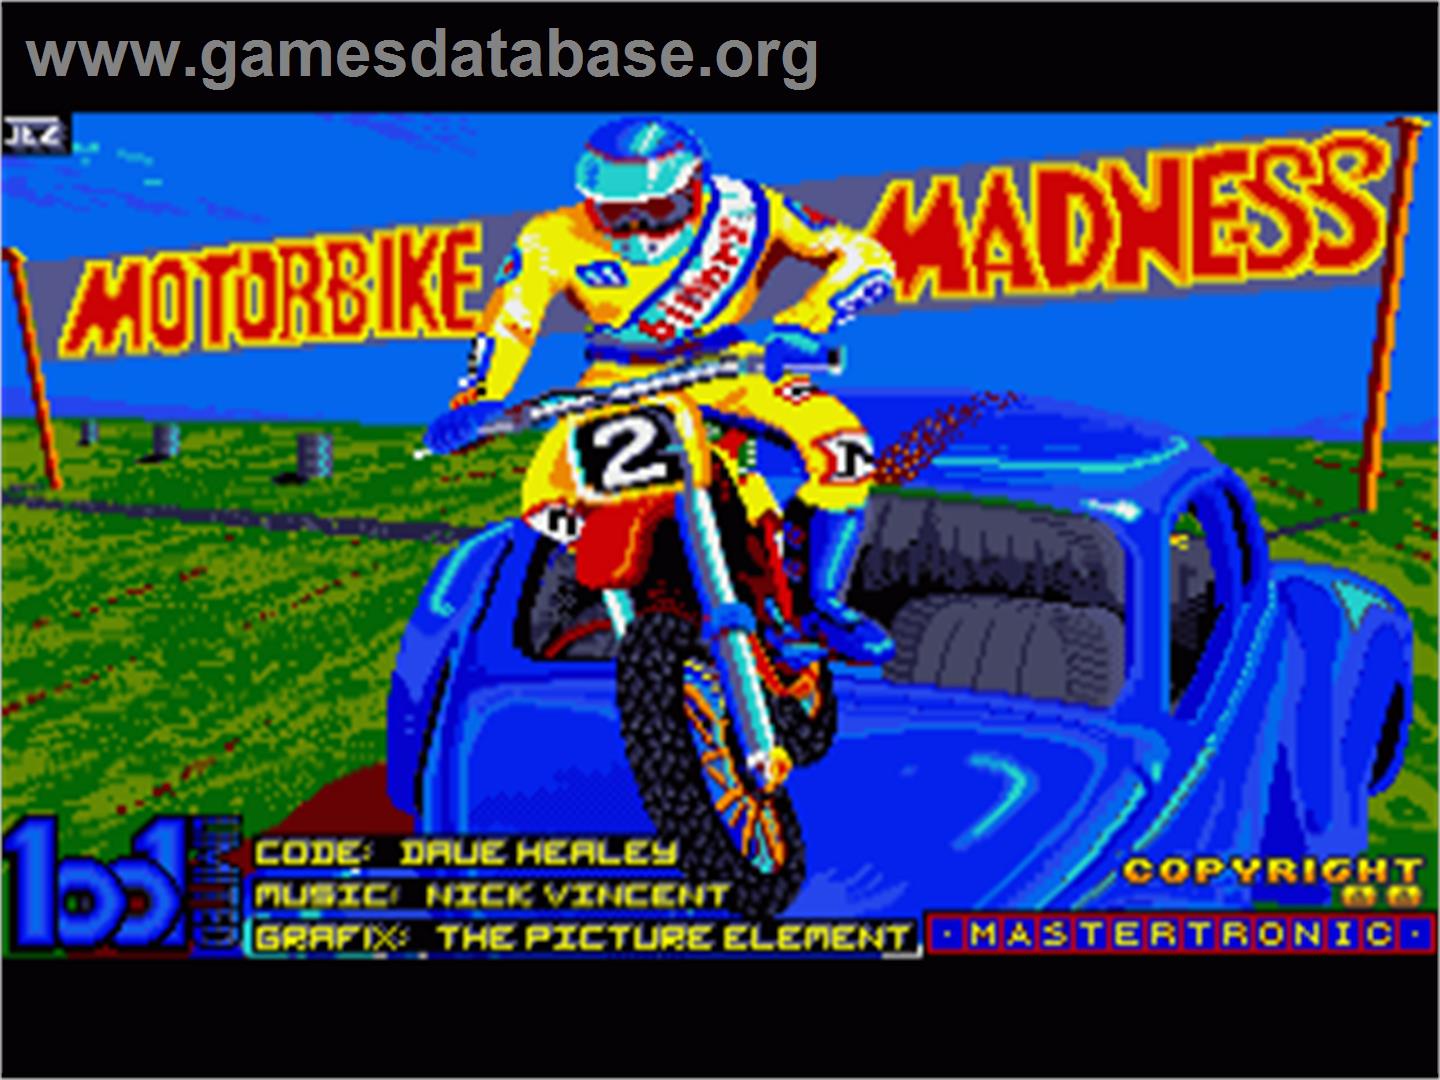 Motorbike Madness - Commodore Amiga - Artwork - In Game